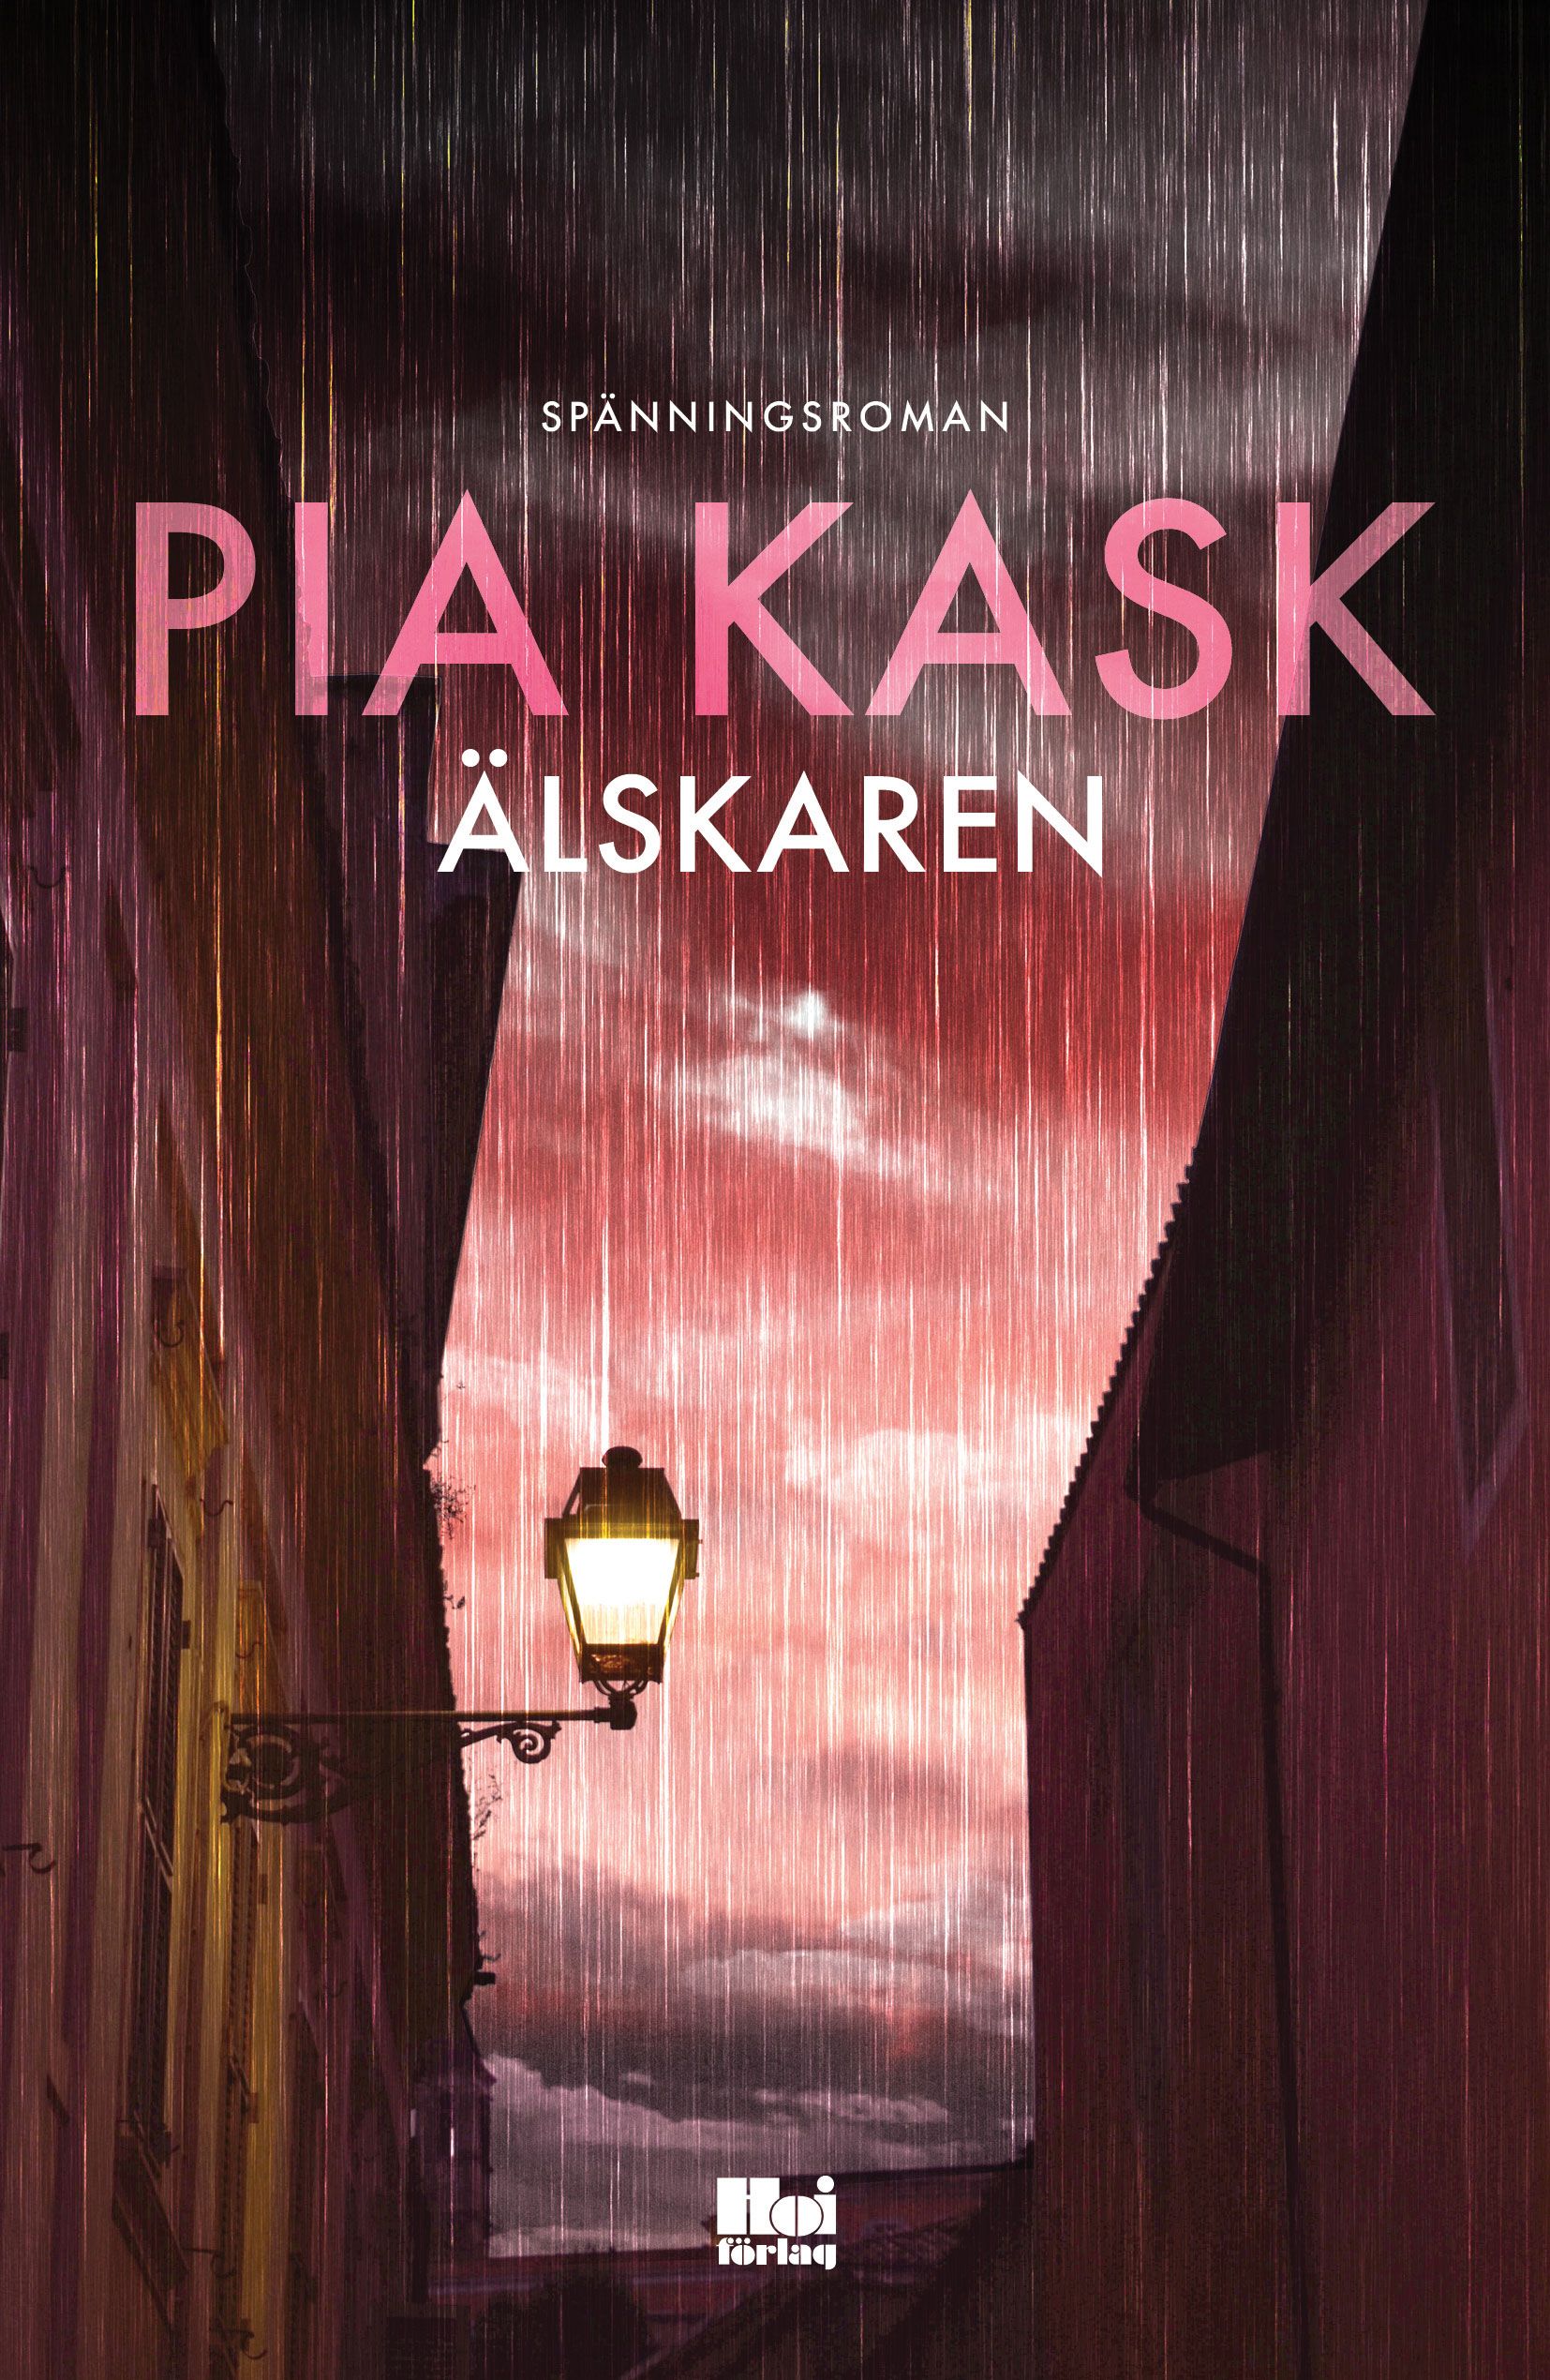 Älskaren, e-bok av Pia Kask